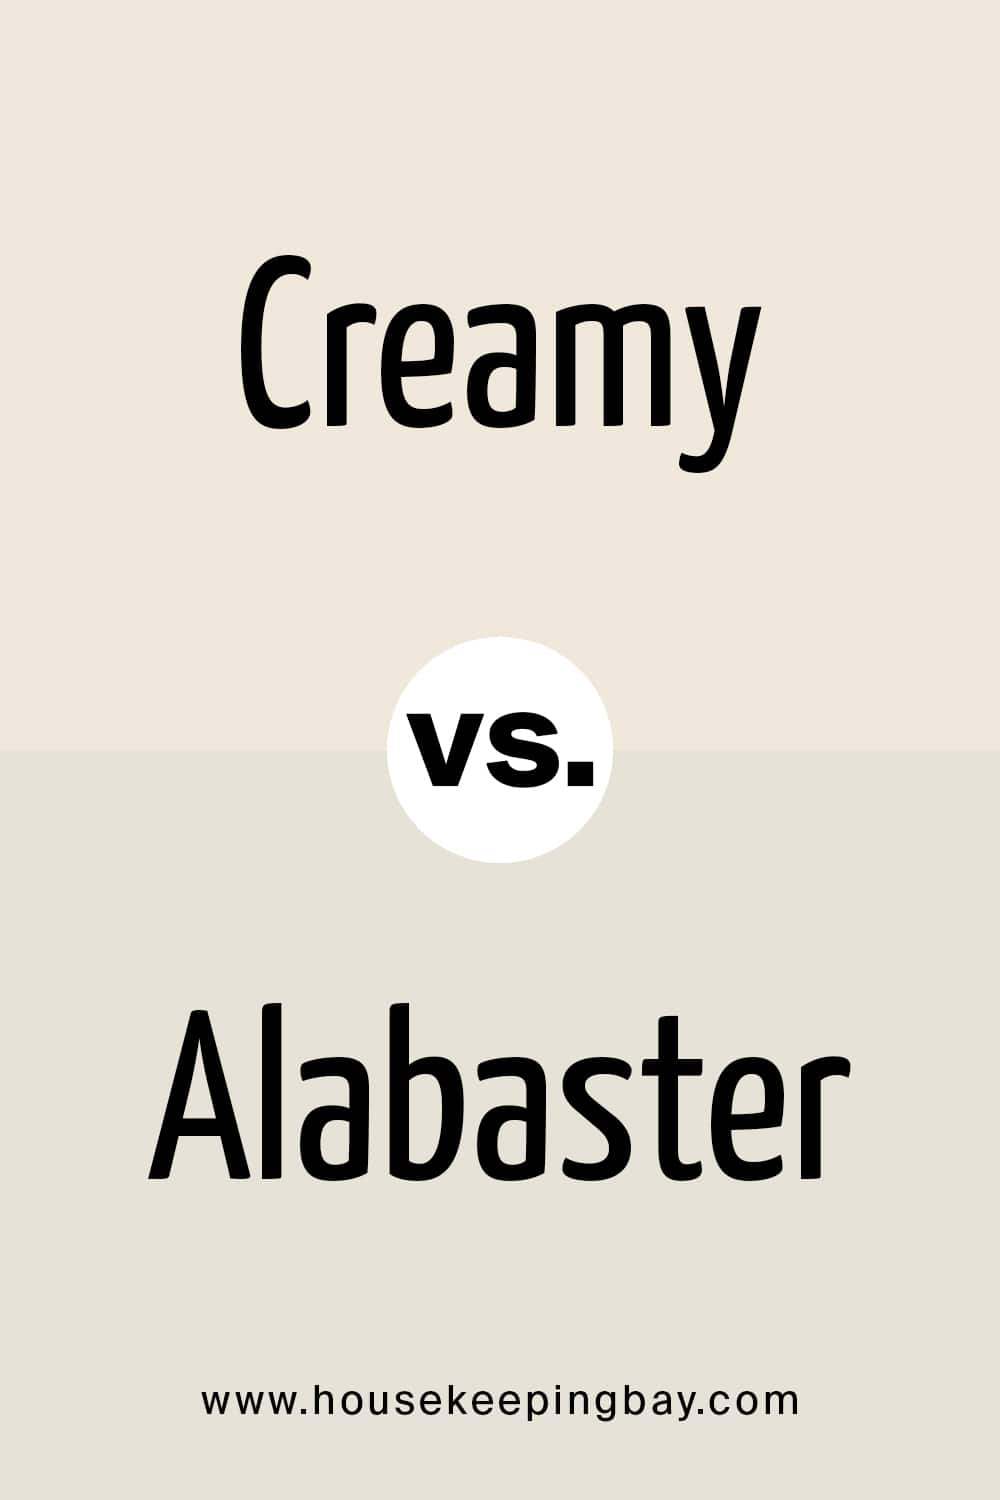 Creamy vs Alabaster